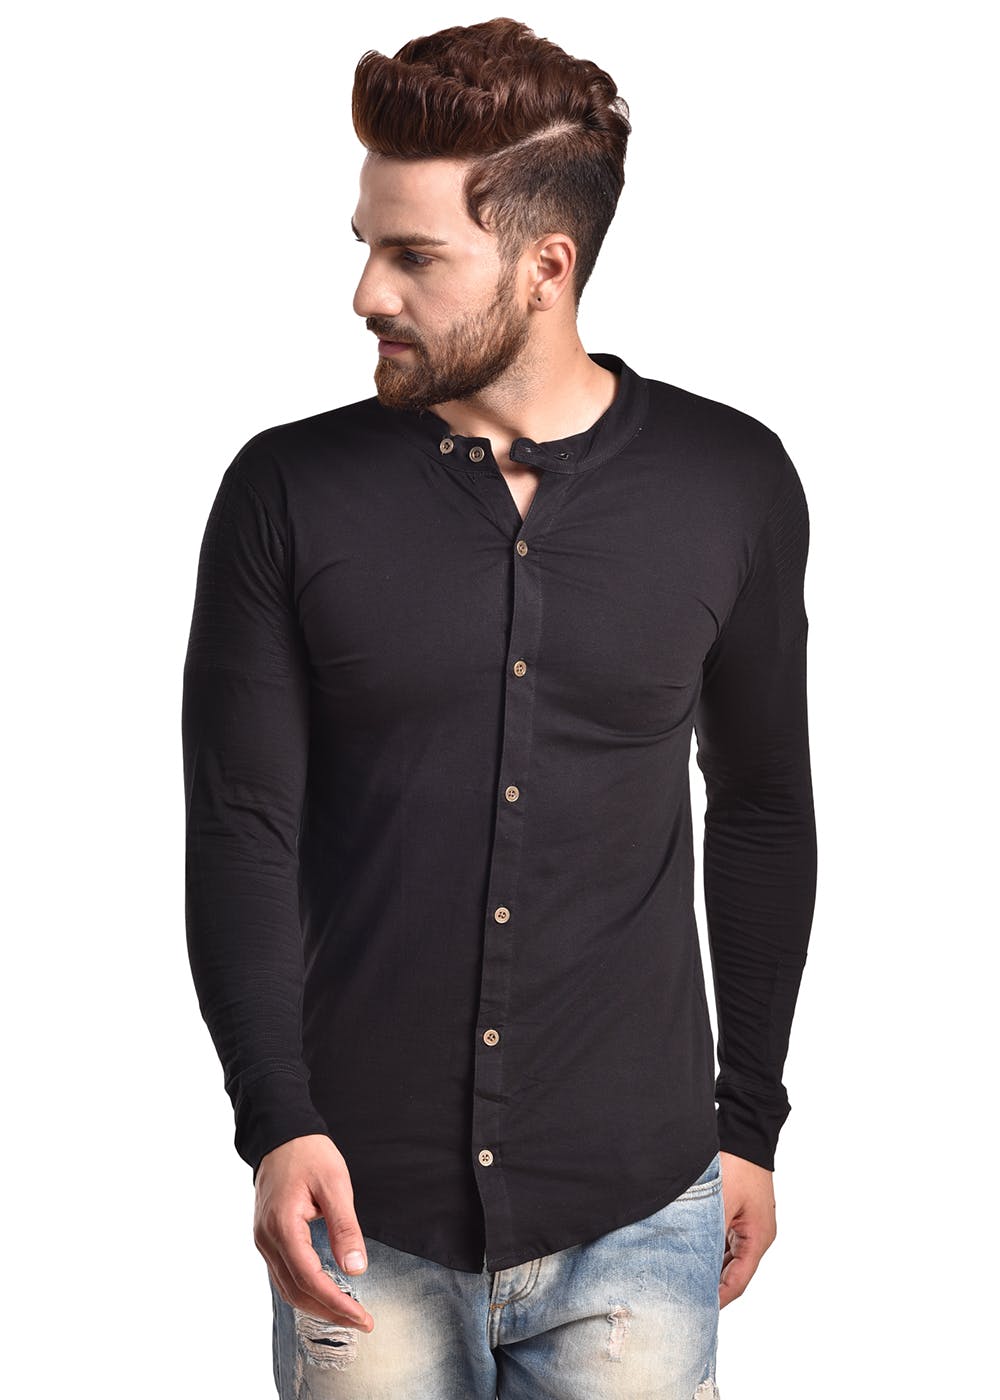 Get Curved Hem Solid Slim Fit Shirt at ₹ 499 | LBB Shop